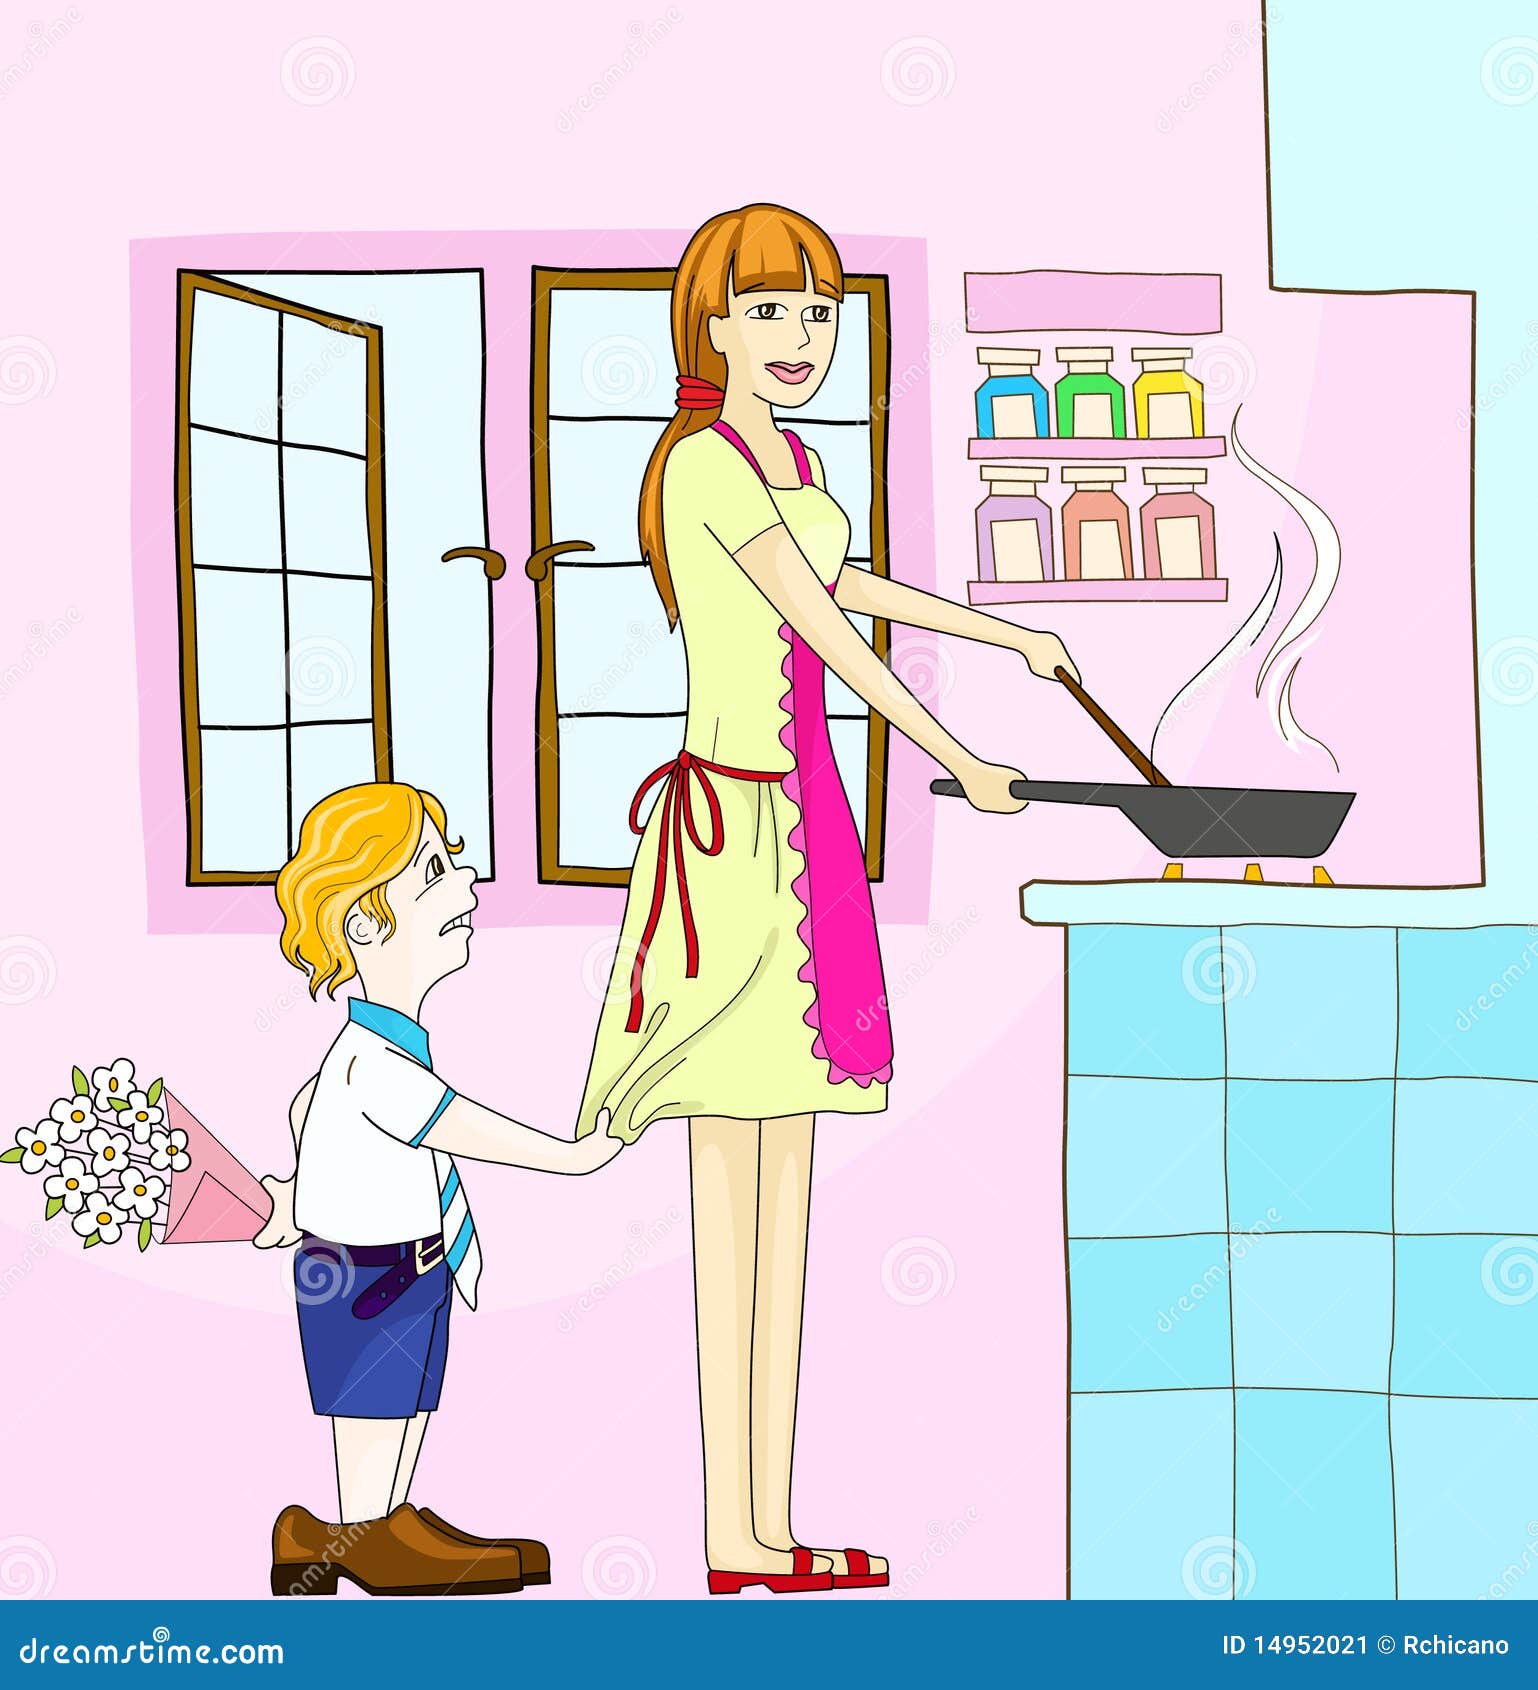 Мама на кухне на английском. Мама на кухне иллюстрация. Мама на кухне рисунок. Домохозяйка иллюстрация. Рисунок мама за домашними делами.